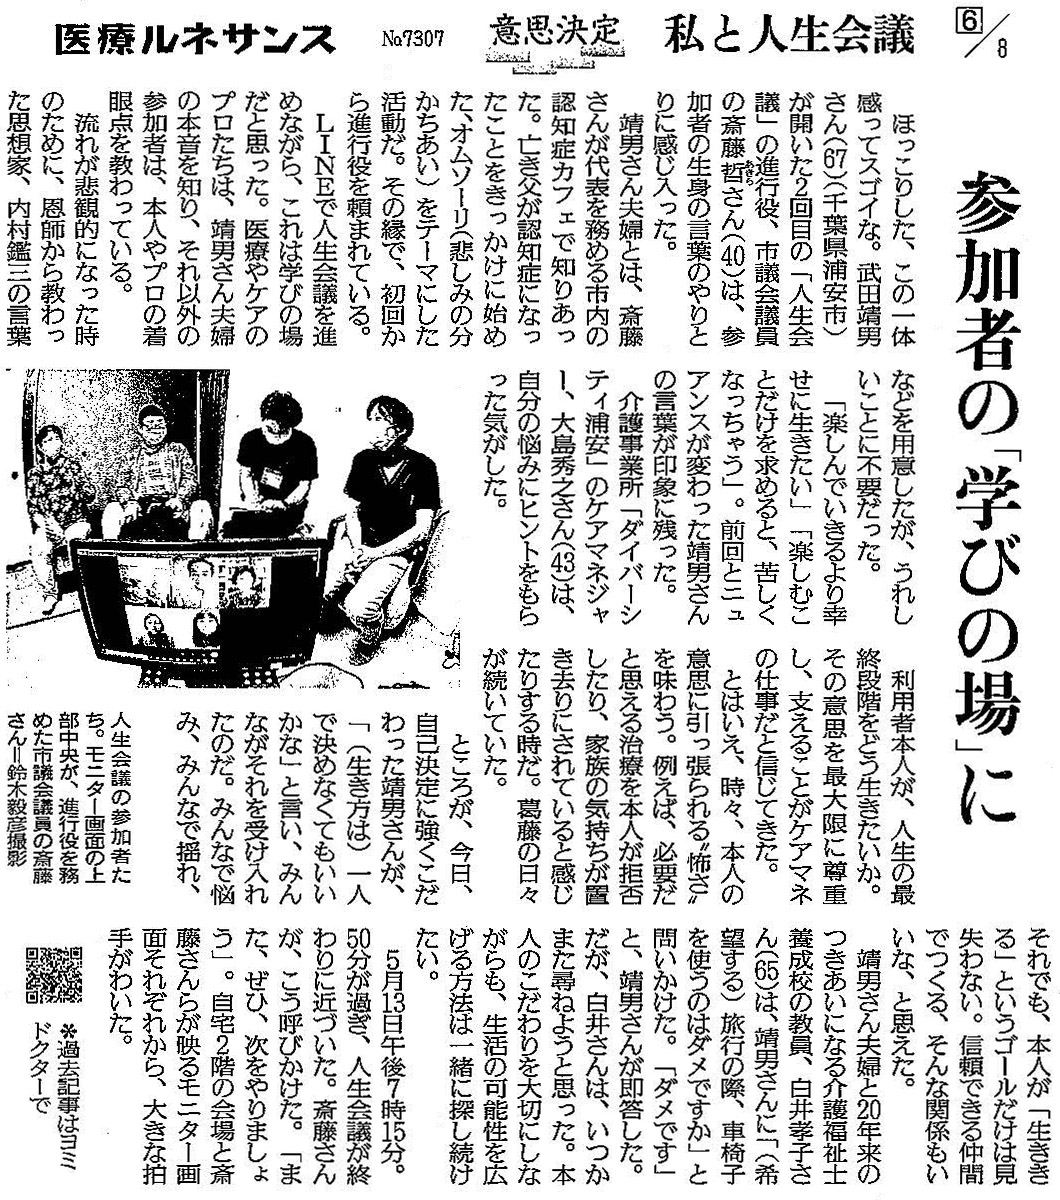 読売新聞 2020年6月19日 掲載記事